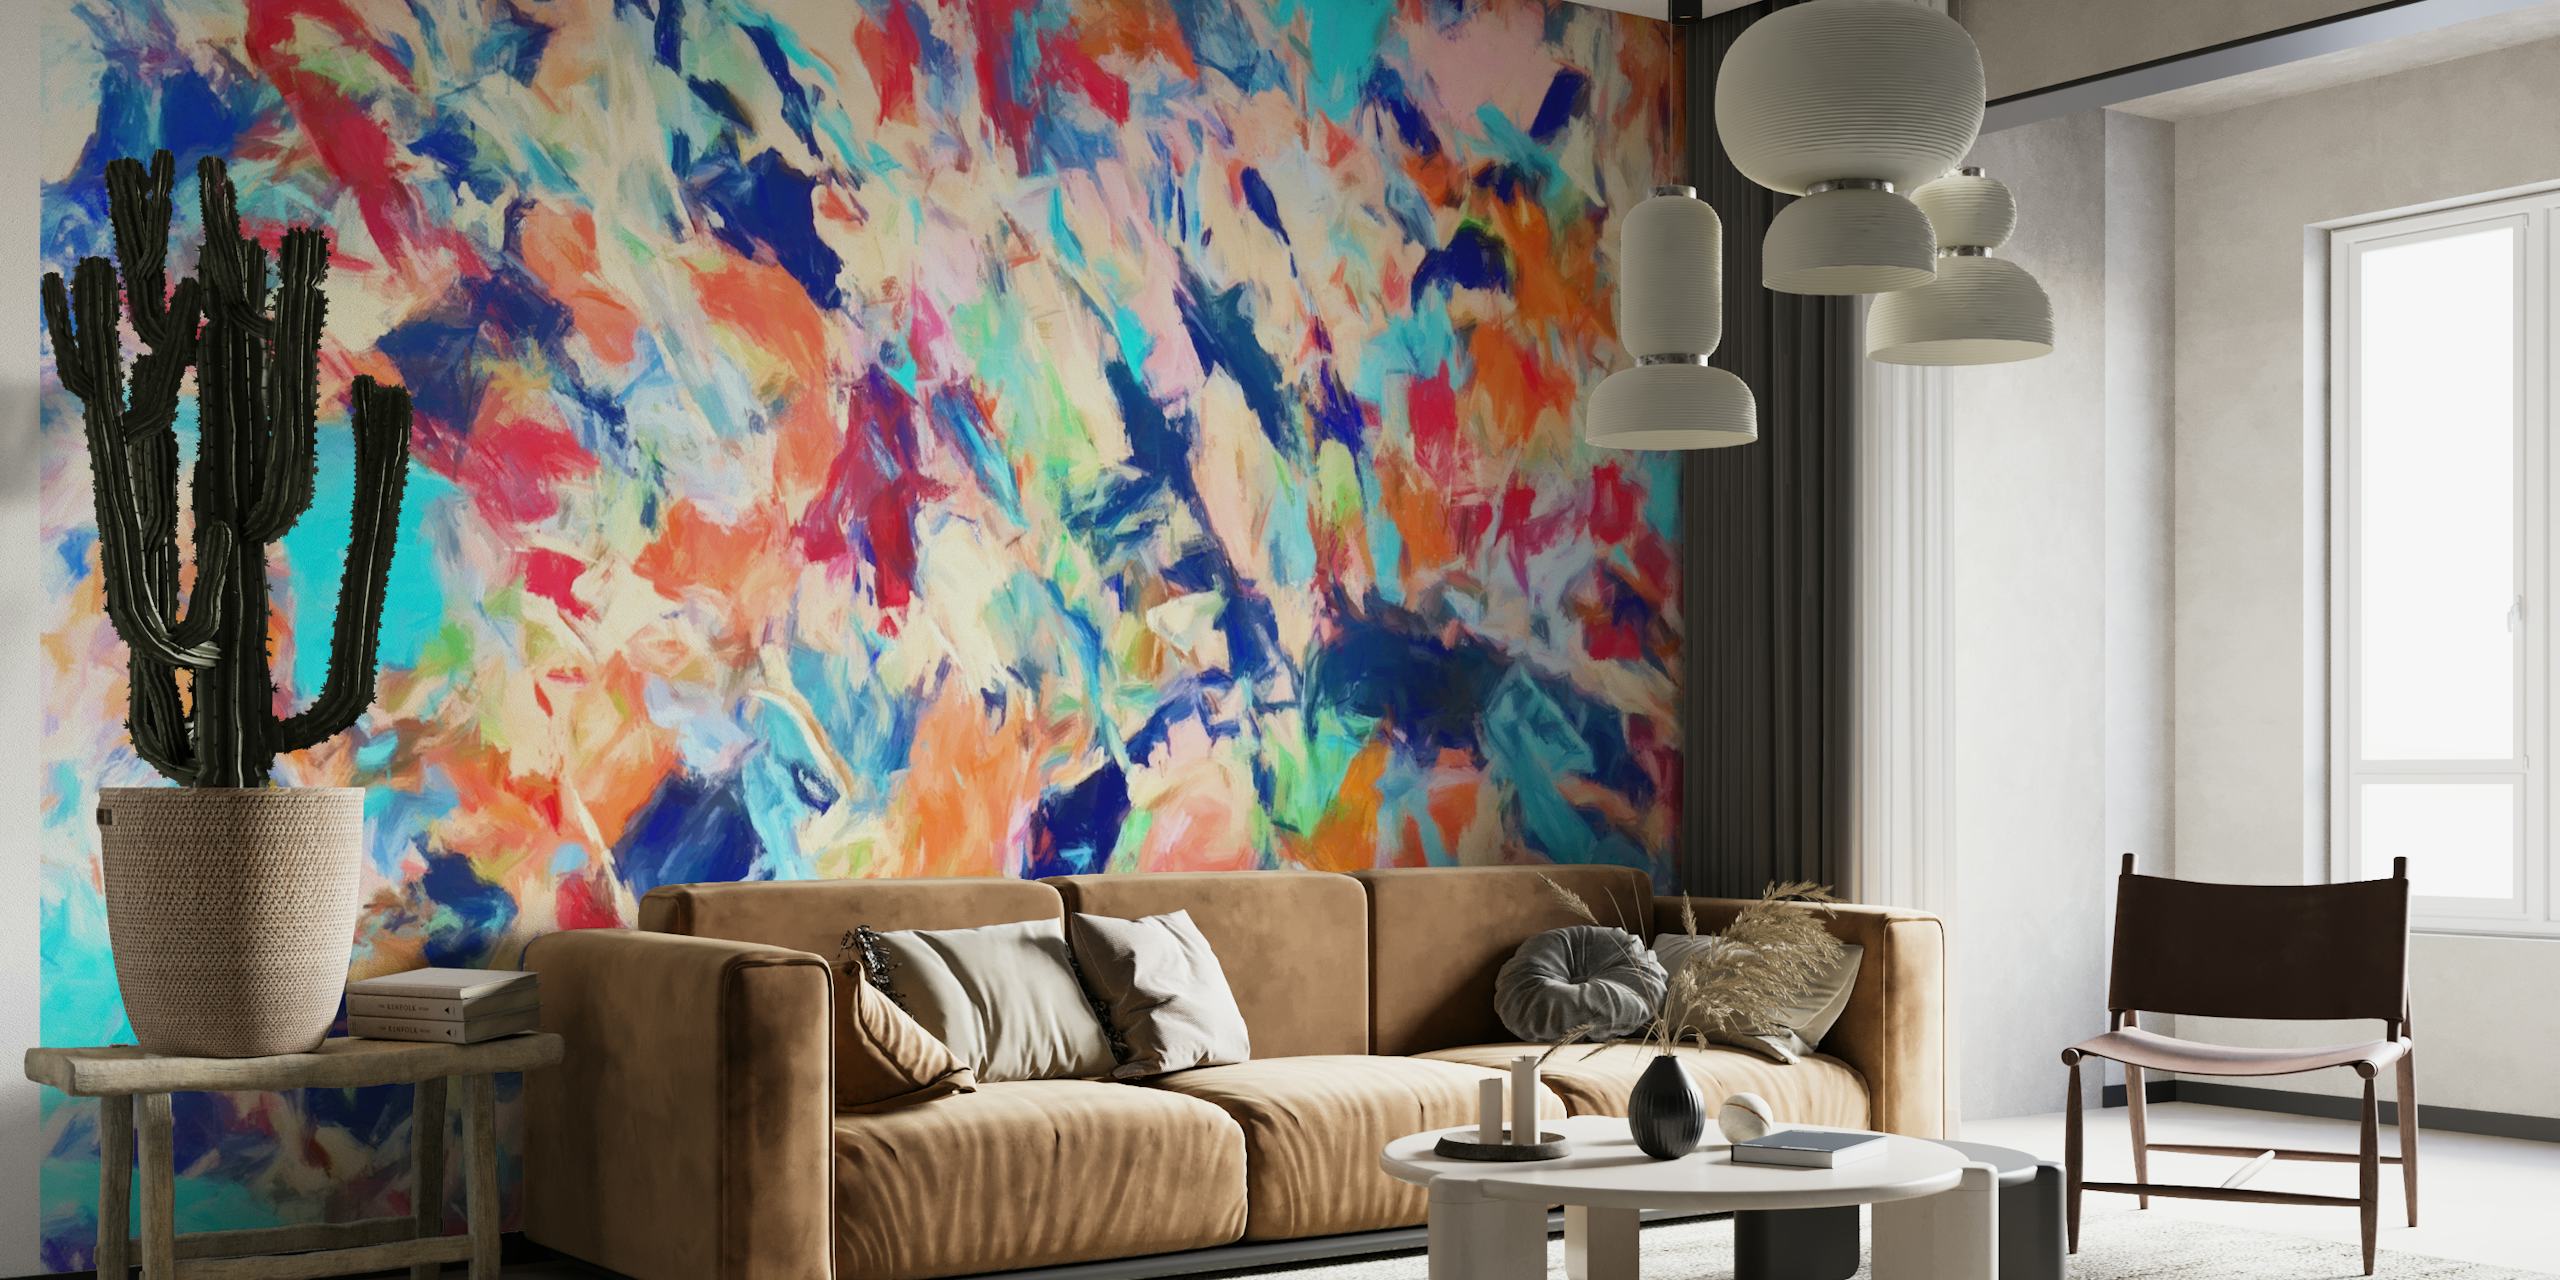 Kleurrijk abstract fotobehang 'Colored Brush Strokes 6' met dynamische blauwe, rode, roze en gele patronen